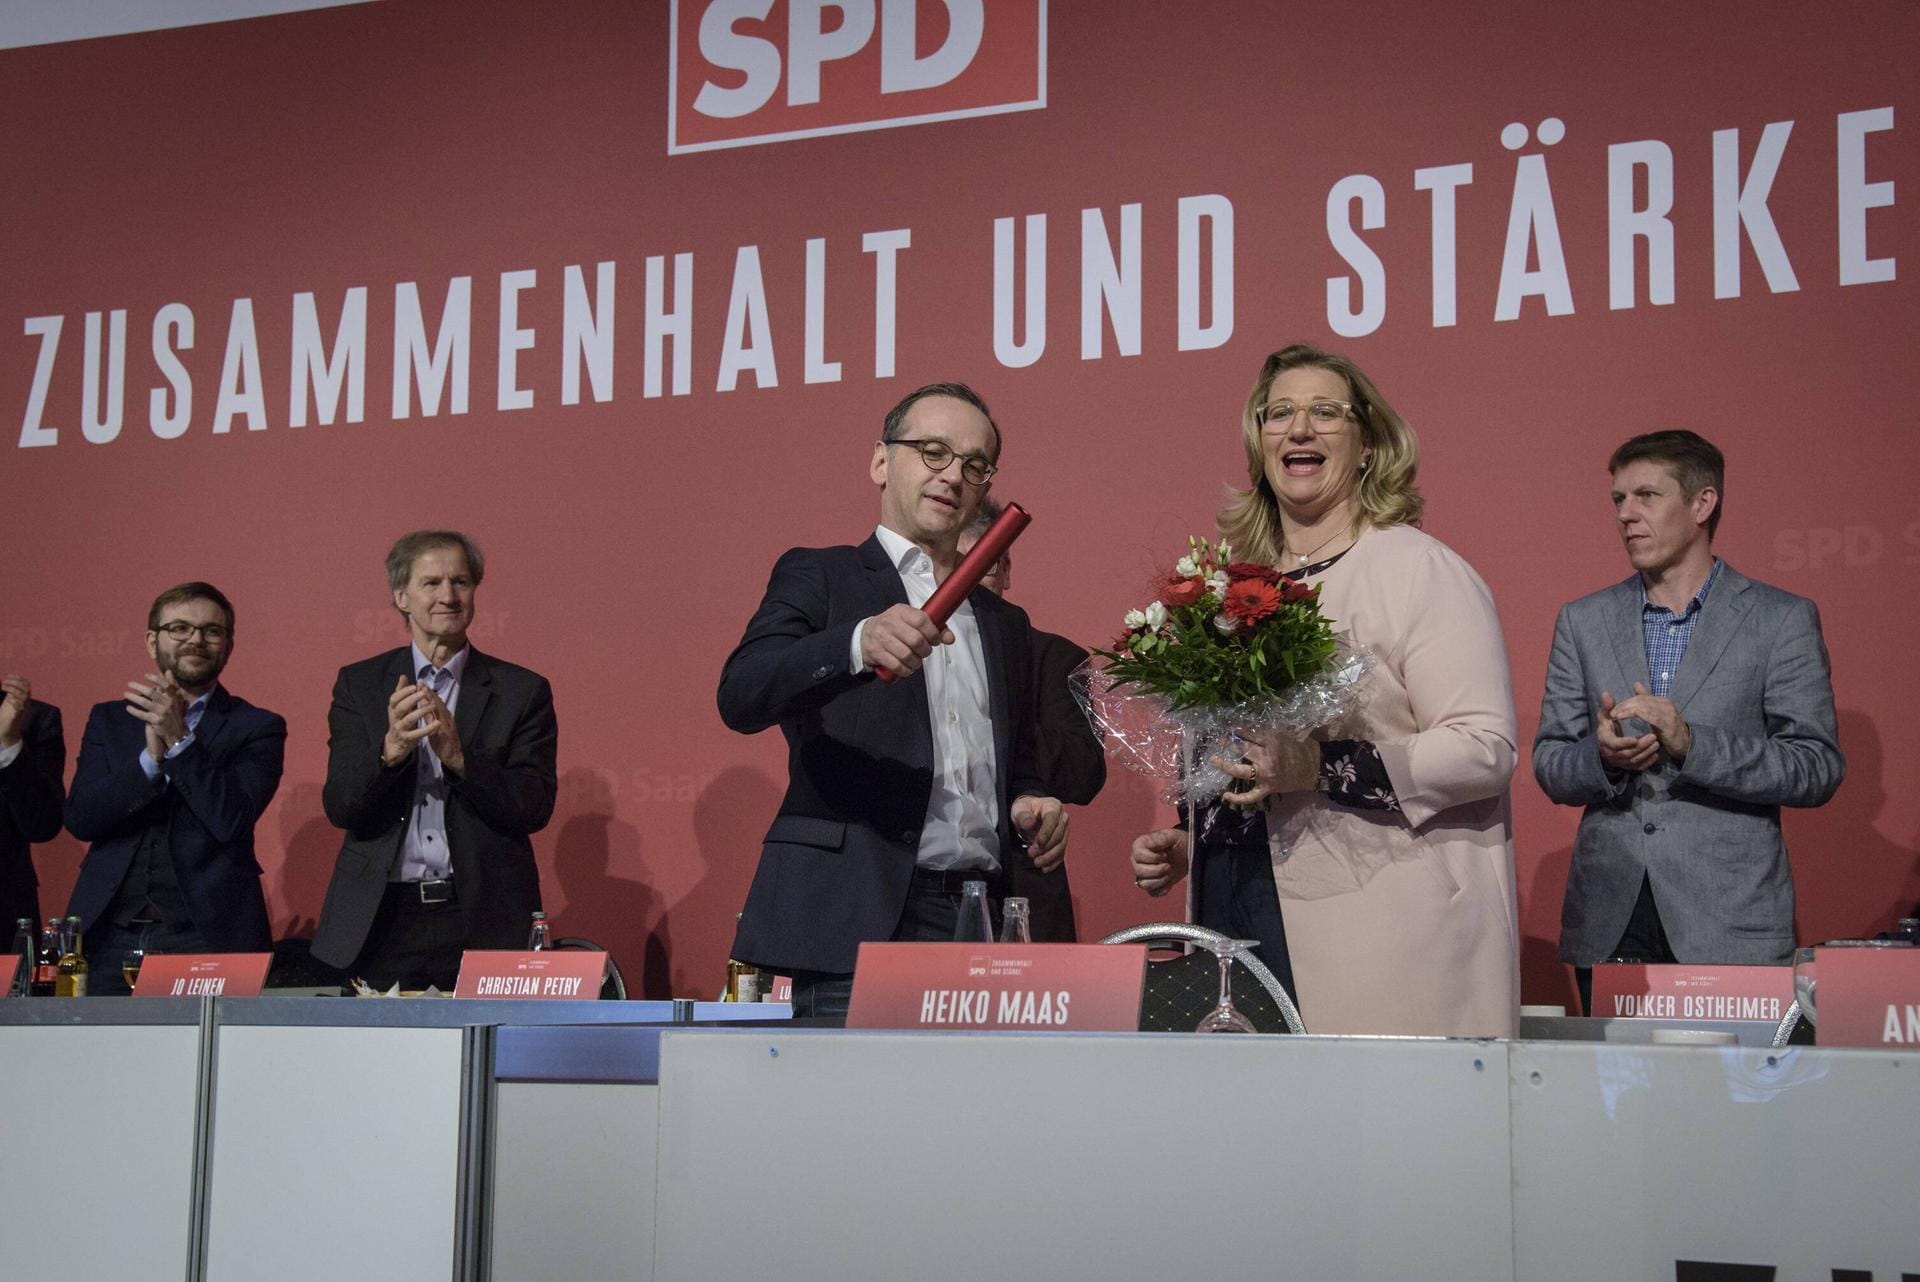 Landesparteitag, März 2018: Rehlinger (r.) wird in ihrem SPD-Landesverband mit knapp 94,5 Prozent der Stimmen zur Vorsitzenden gewählt. Den Staffelstab übernimmt sie von Heiko Maas (l.), der ins Außenministerium wechselt.